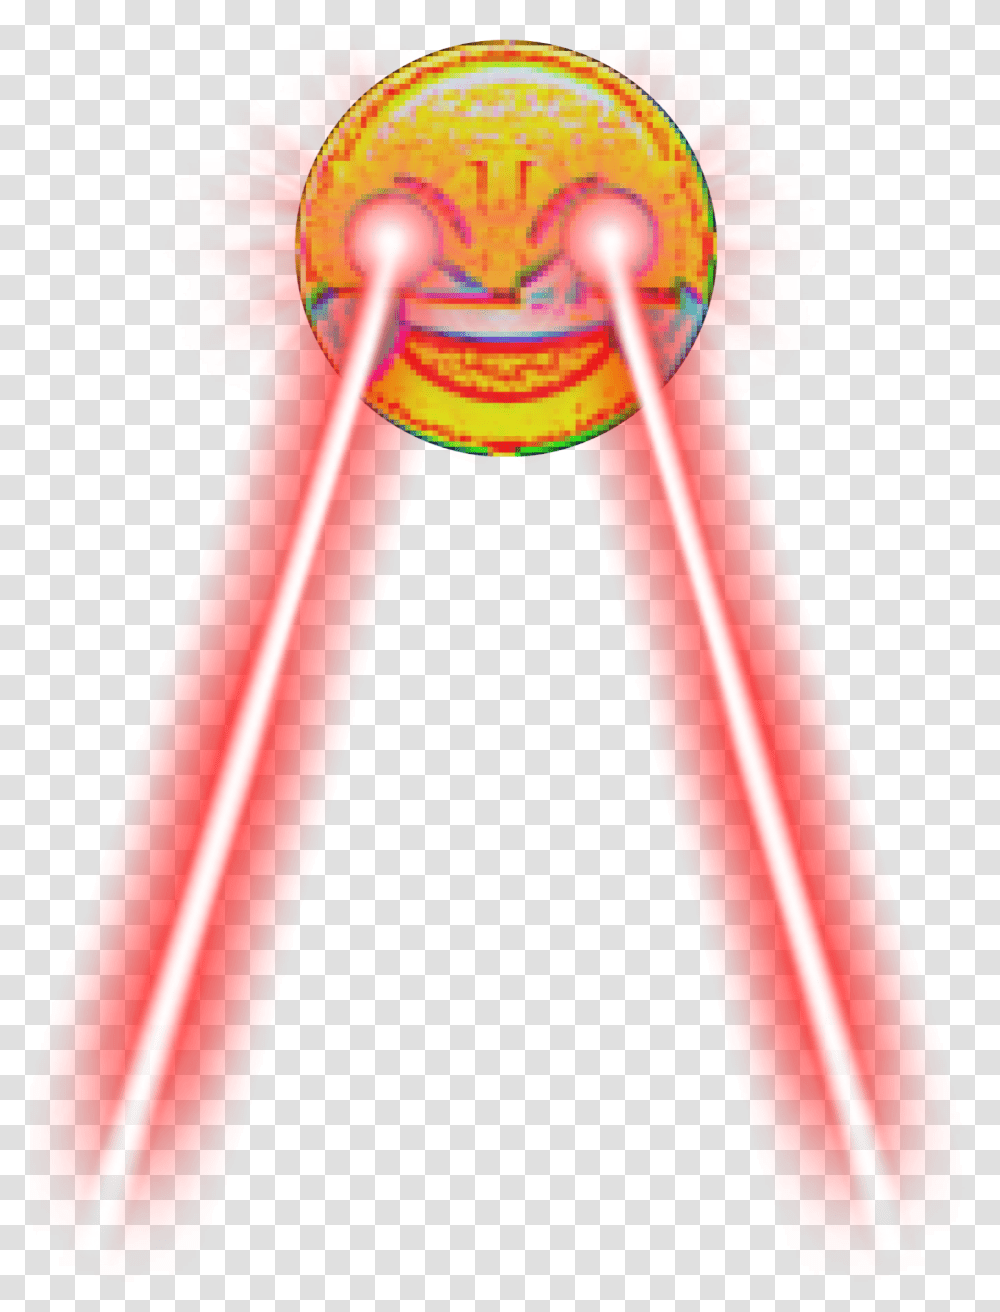 Dank Meme Laughing Emoji Crying Laser Laughing Emoji Meme, Toy Transparent Png